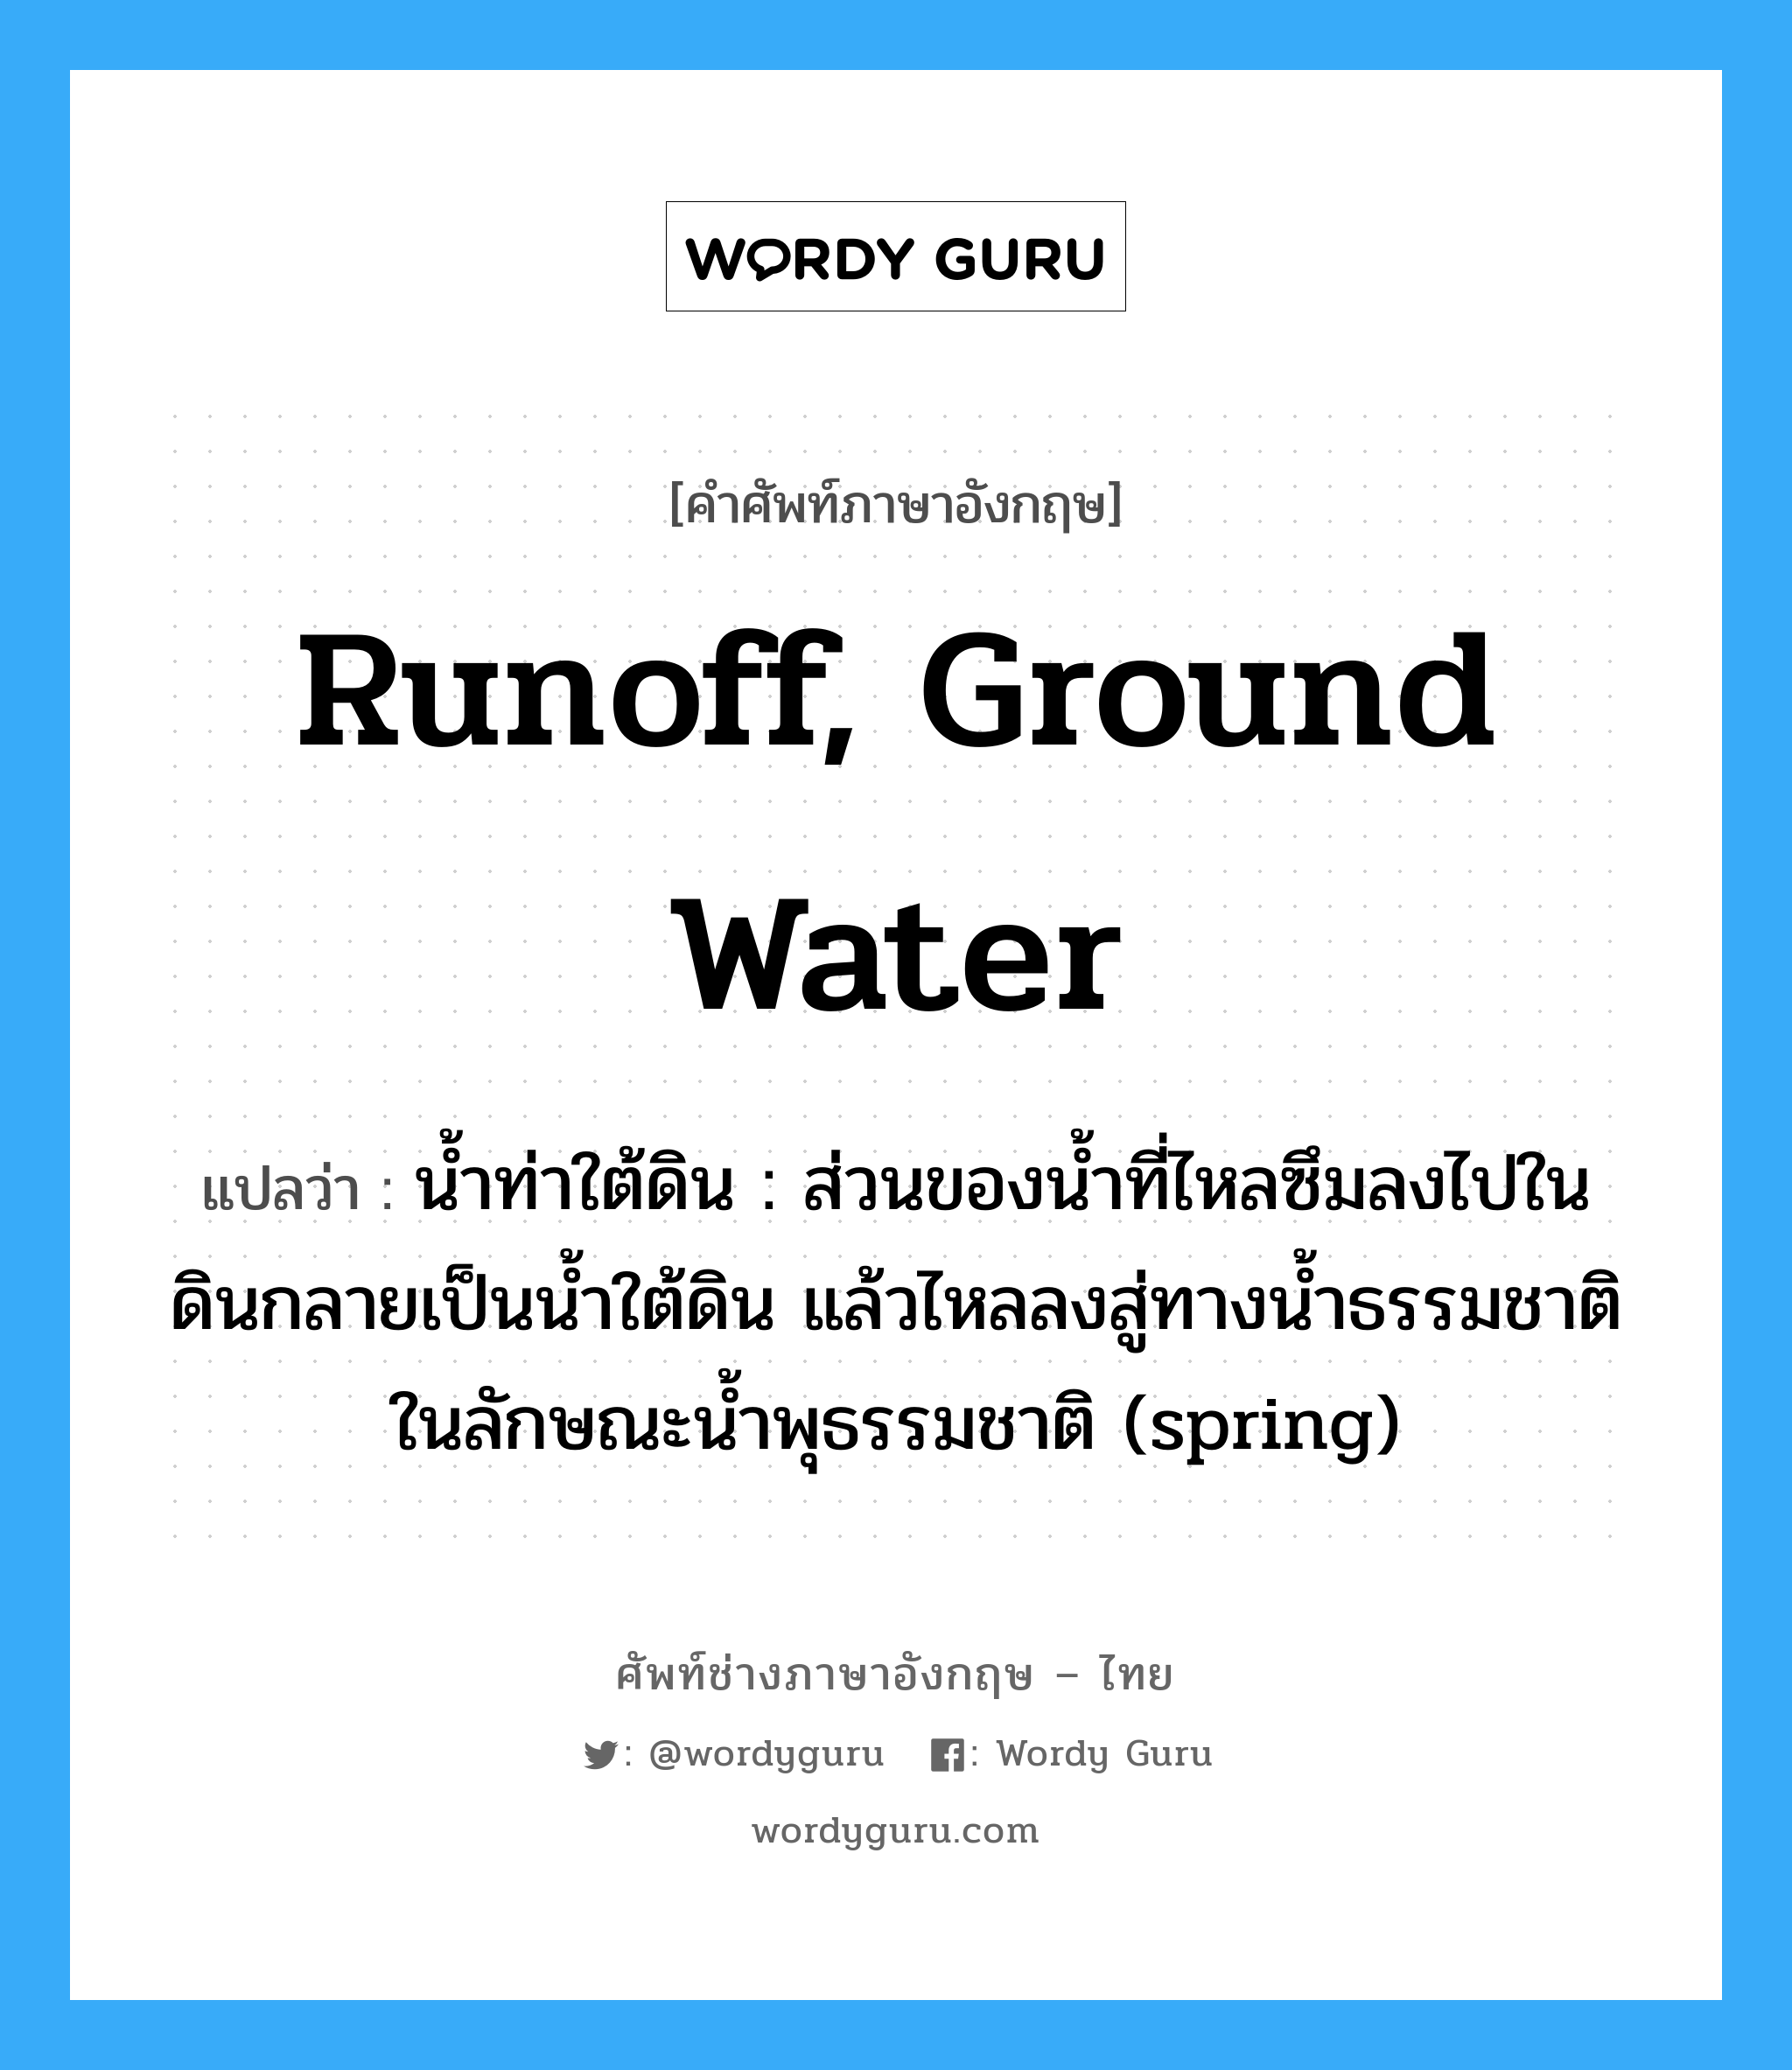 runoff, ground water แปลว่า?, คำศัพท์ช่างภาษาอังกฤษ - ไทย runoff, ground water คำศัพท์ภาษาอังกฤษ runoff, ground water แปลว่า น้ำท่าใต้ดิน : ส่วนของน้ำที่ไหลซึมลงไปในดินกลายเป็นน้ำใต้ดิน แล้วไหลลงสู่ทางน้ำธรรมชาติในลักษณะน้ำพุธรรมชาติ (spring)